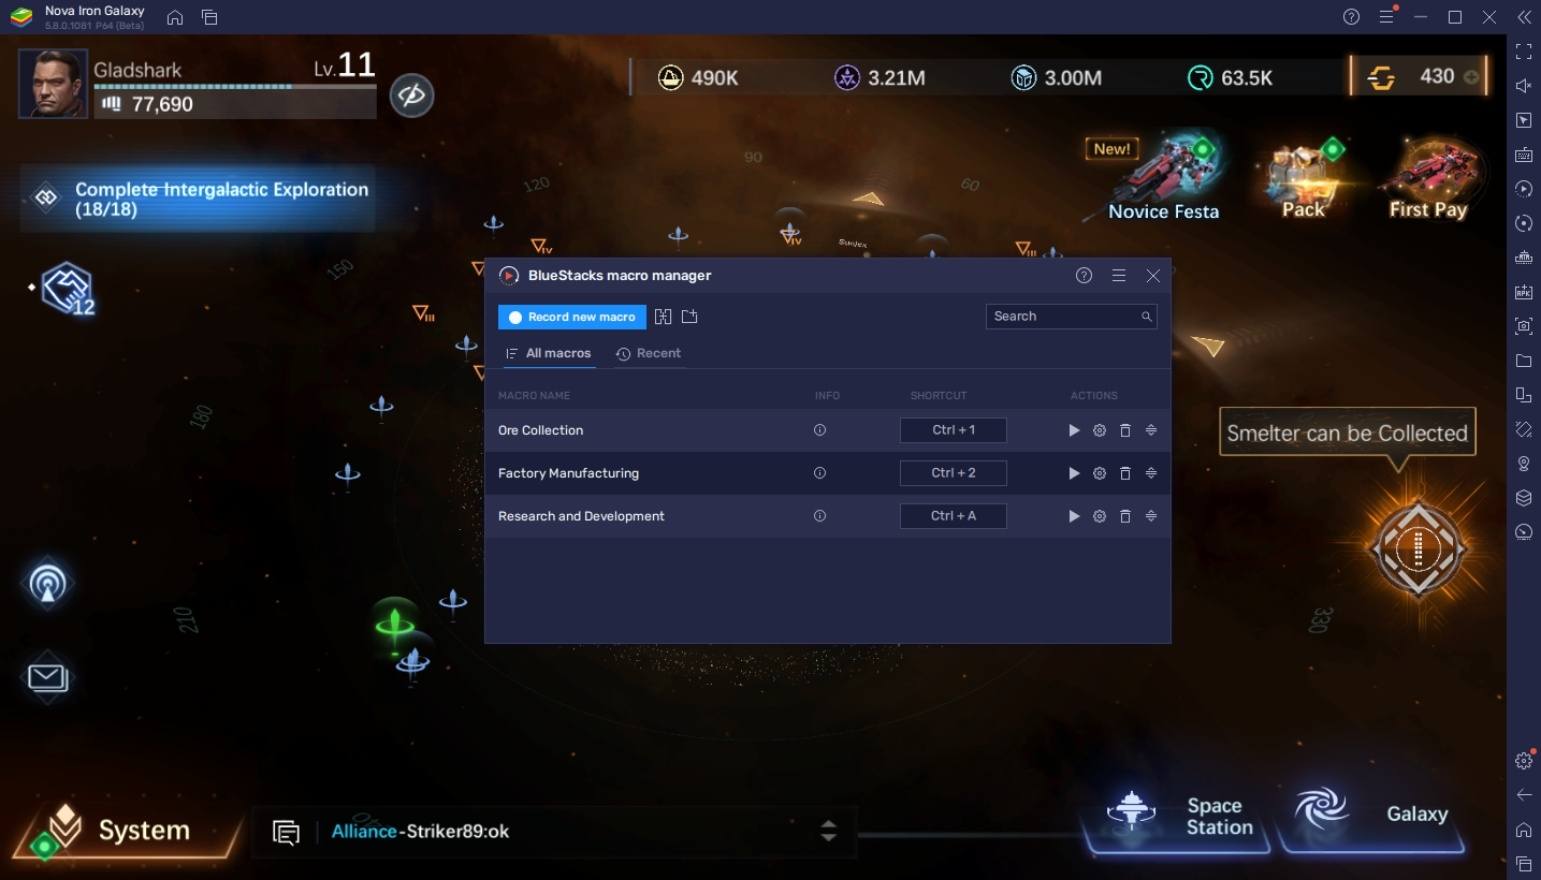 Wie man Nova: Iron Galaxy auf dem PC mit BlueStacks spielt